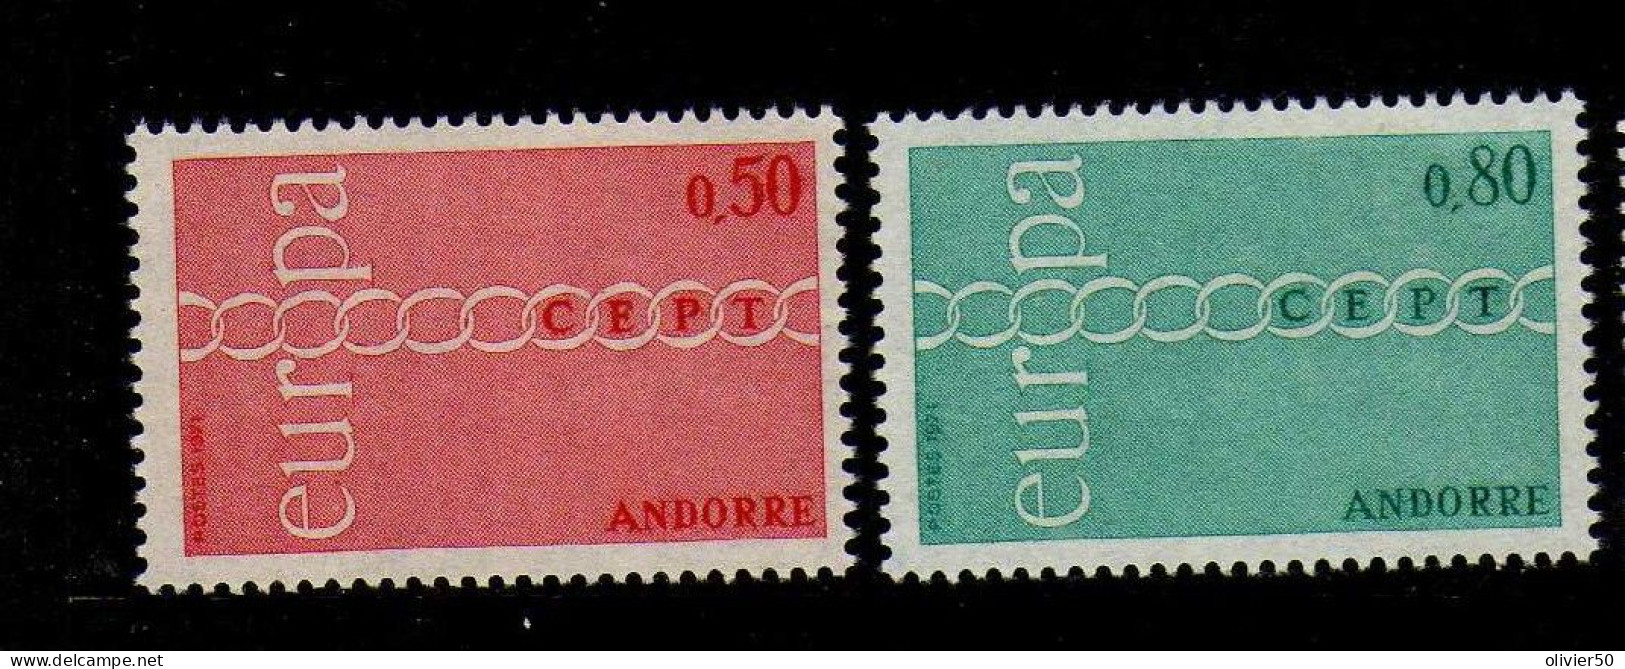 Andorre Francaise -  1971 - Europa  -Neufs** - MNH  - - Ongebruikt